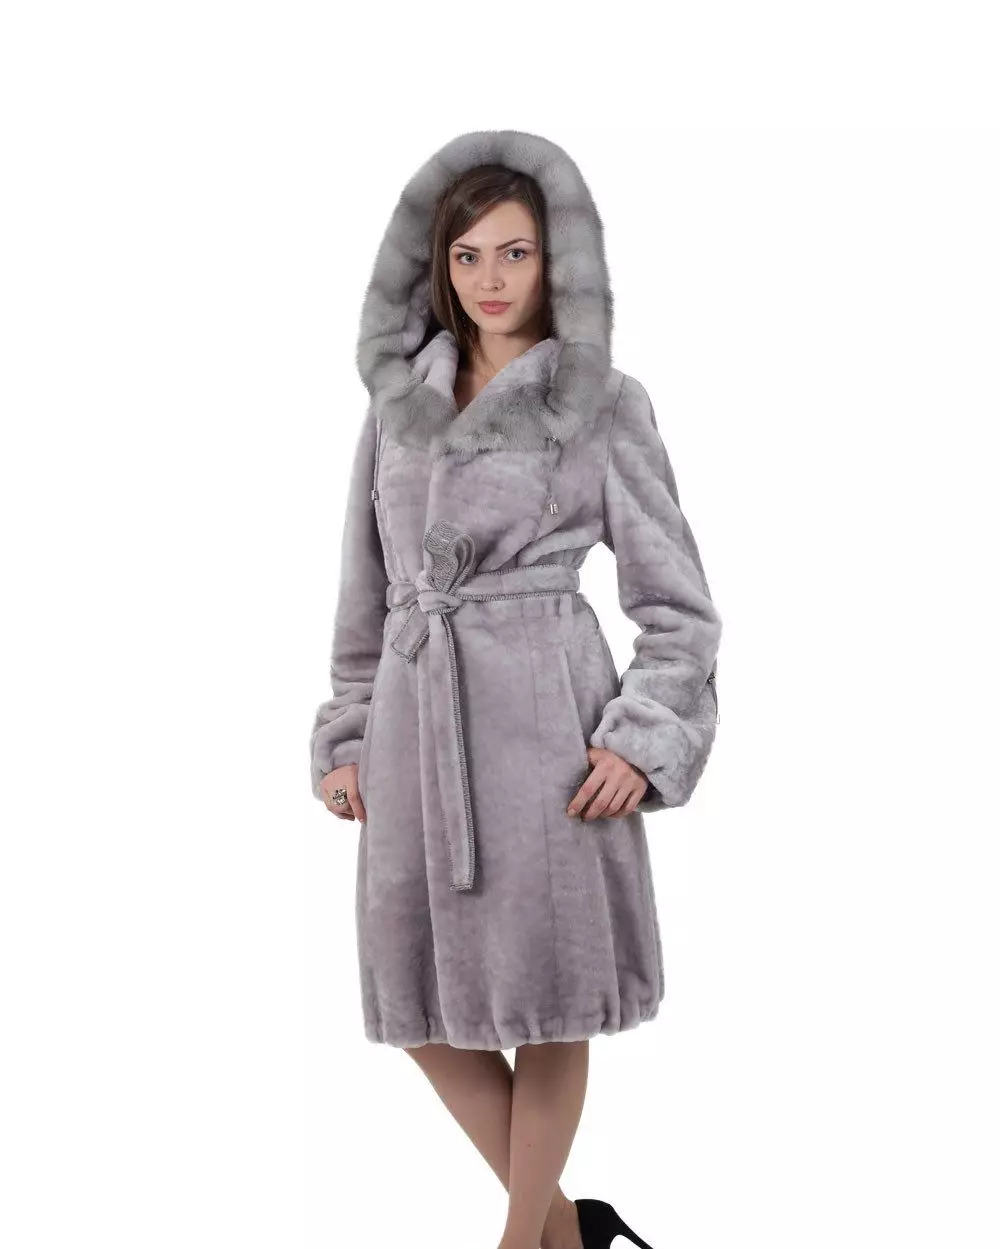 Pyatigorsky Coats de peles (79 fotos): Modelos de Nutria Fur Factory en Pyatigorsk, comentarios 764_15